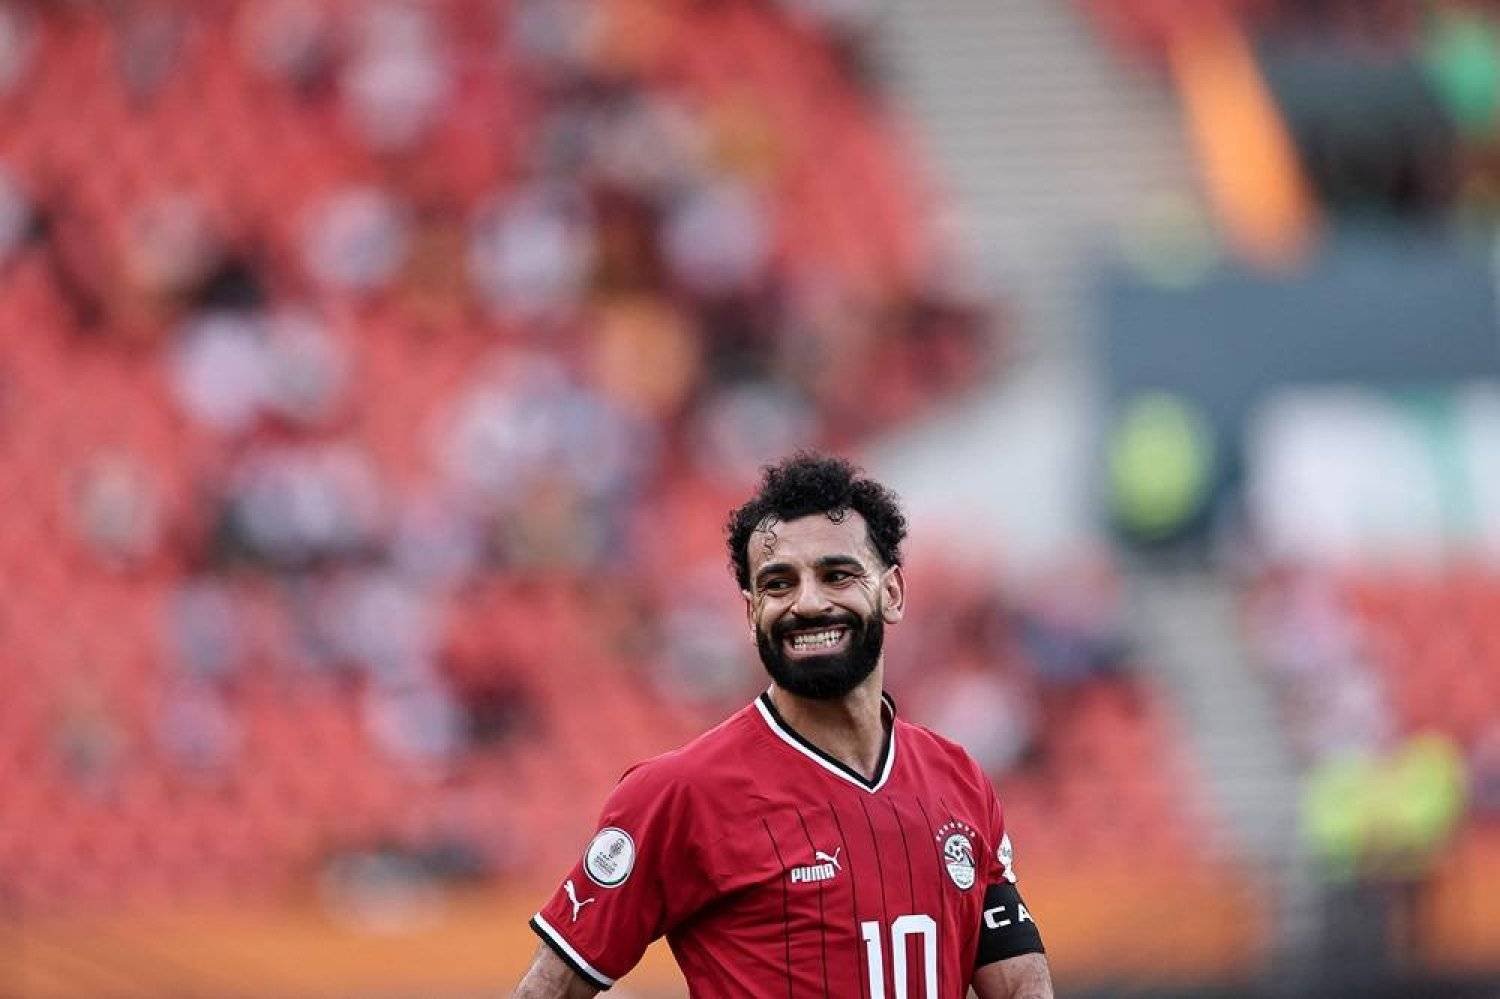 Liverpool's forward Mohamed Salah. (AFP)
